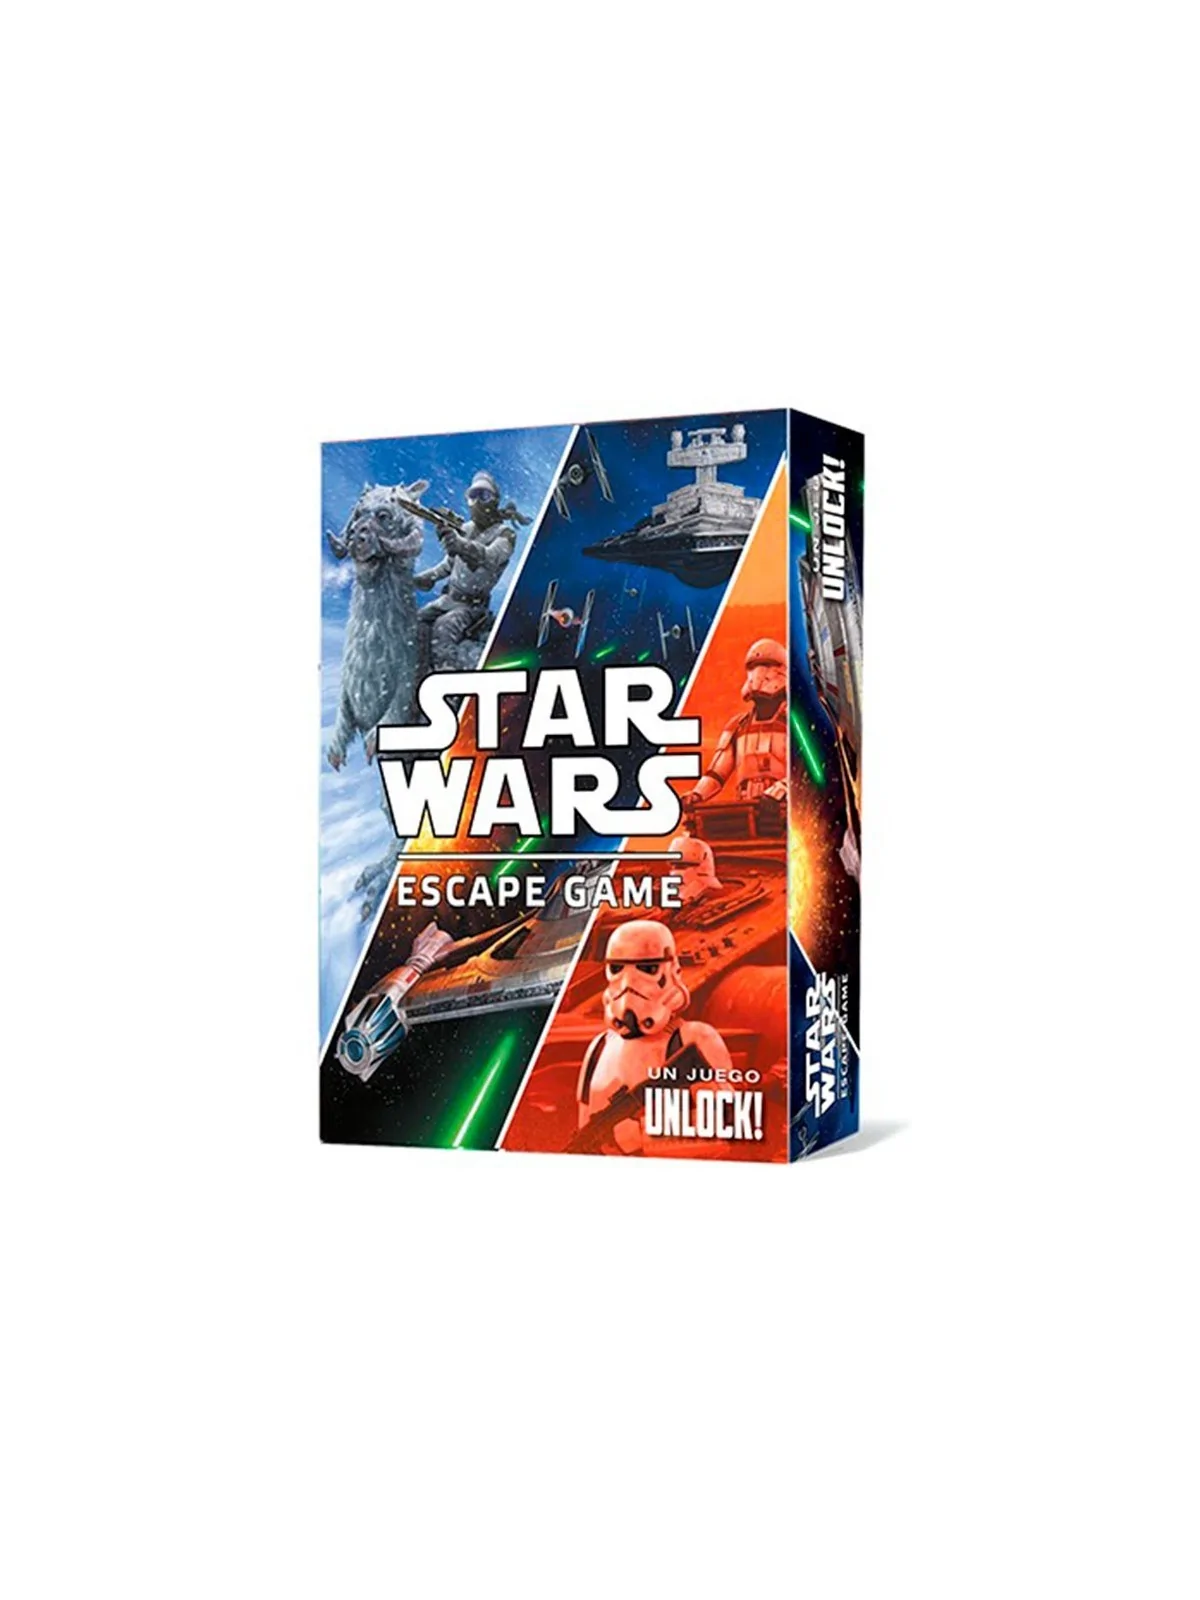 Comprar Unlock! Star Wars Escape Game barato al mejor precio 34,99 € d